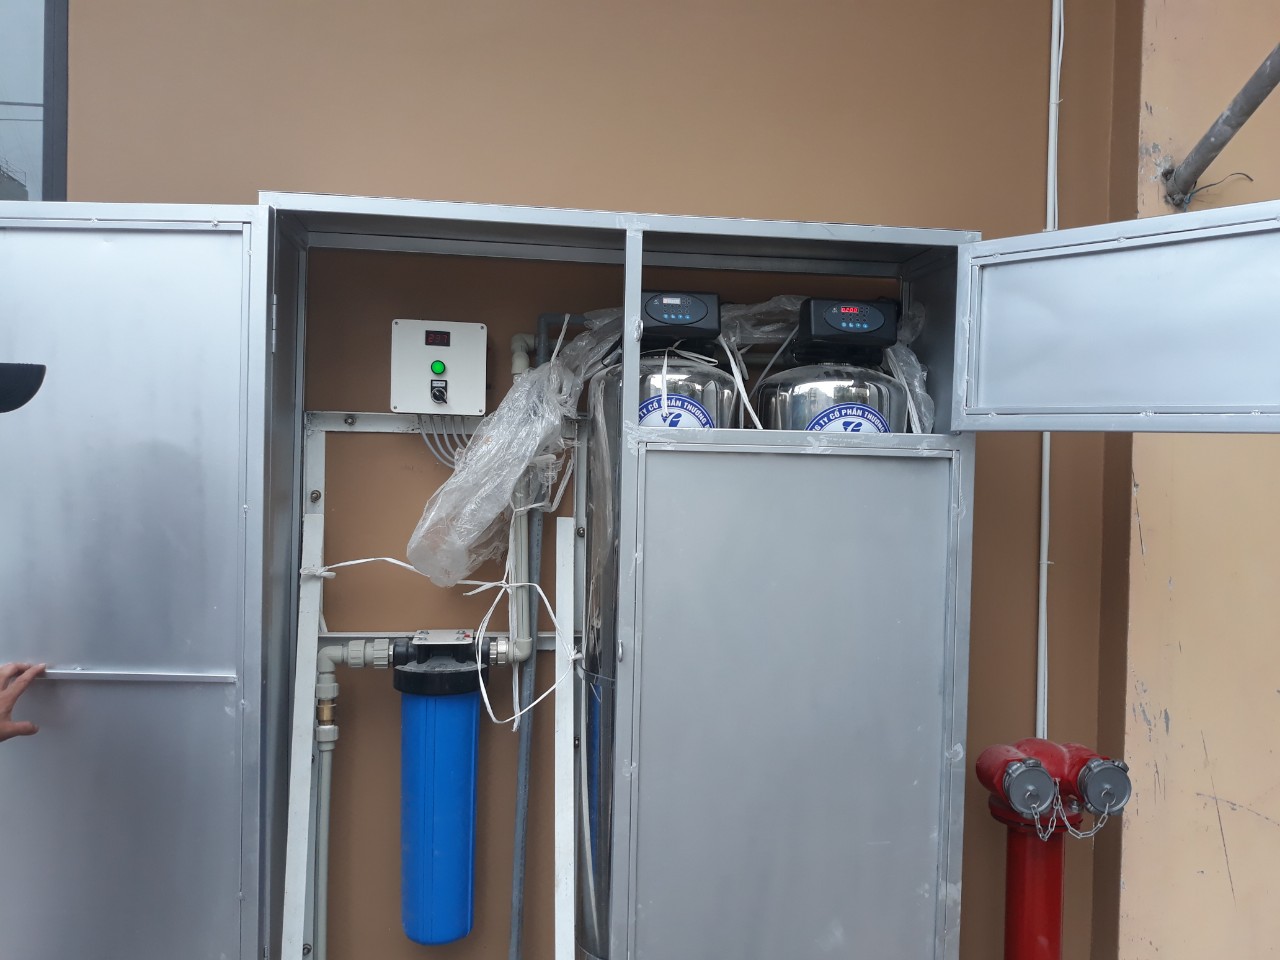 xử lý nước, xử lý nước tại cửa lò, xử lý nước ở cửa lò, xét nghiệm nước,máy lọc nước tại cửa lò 2